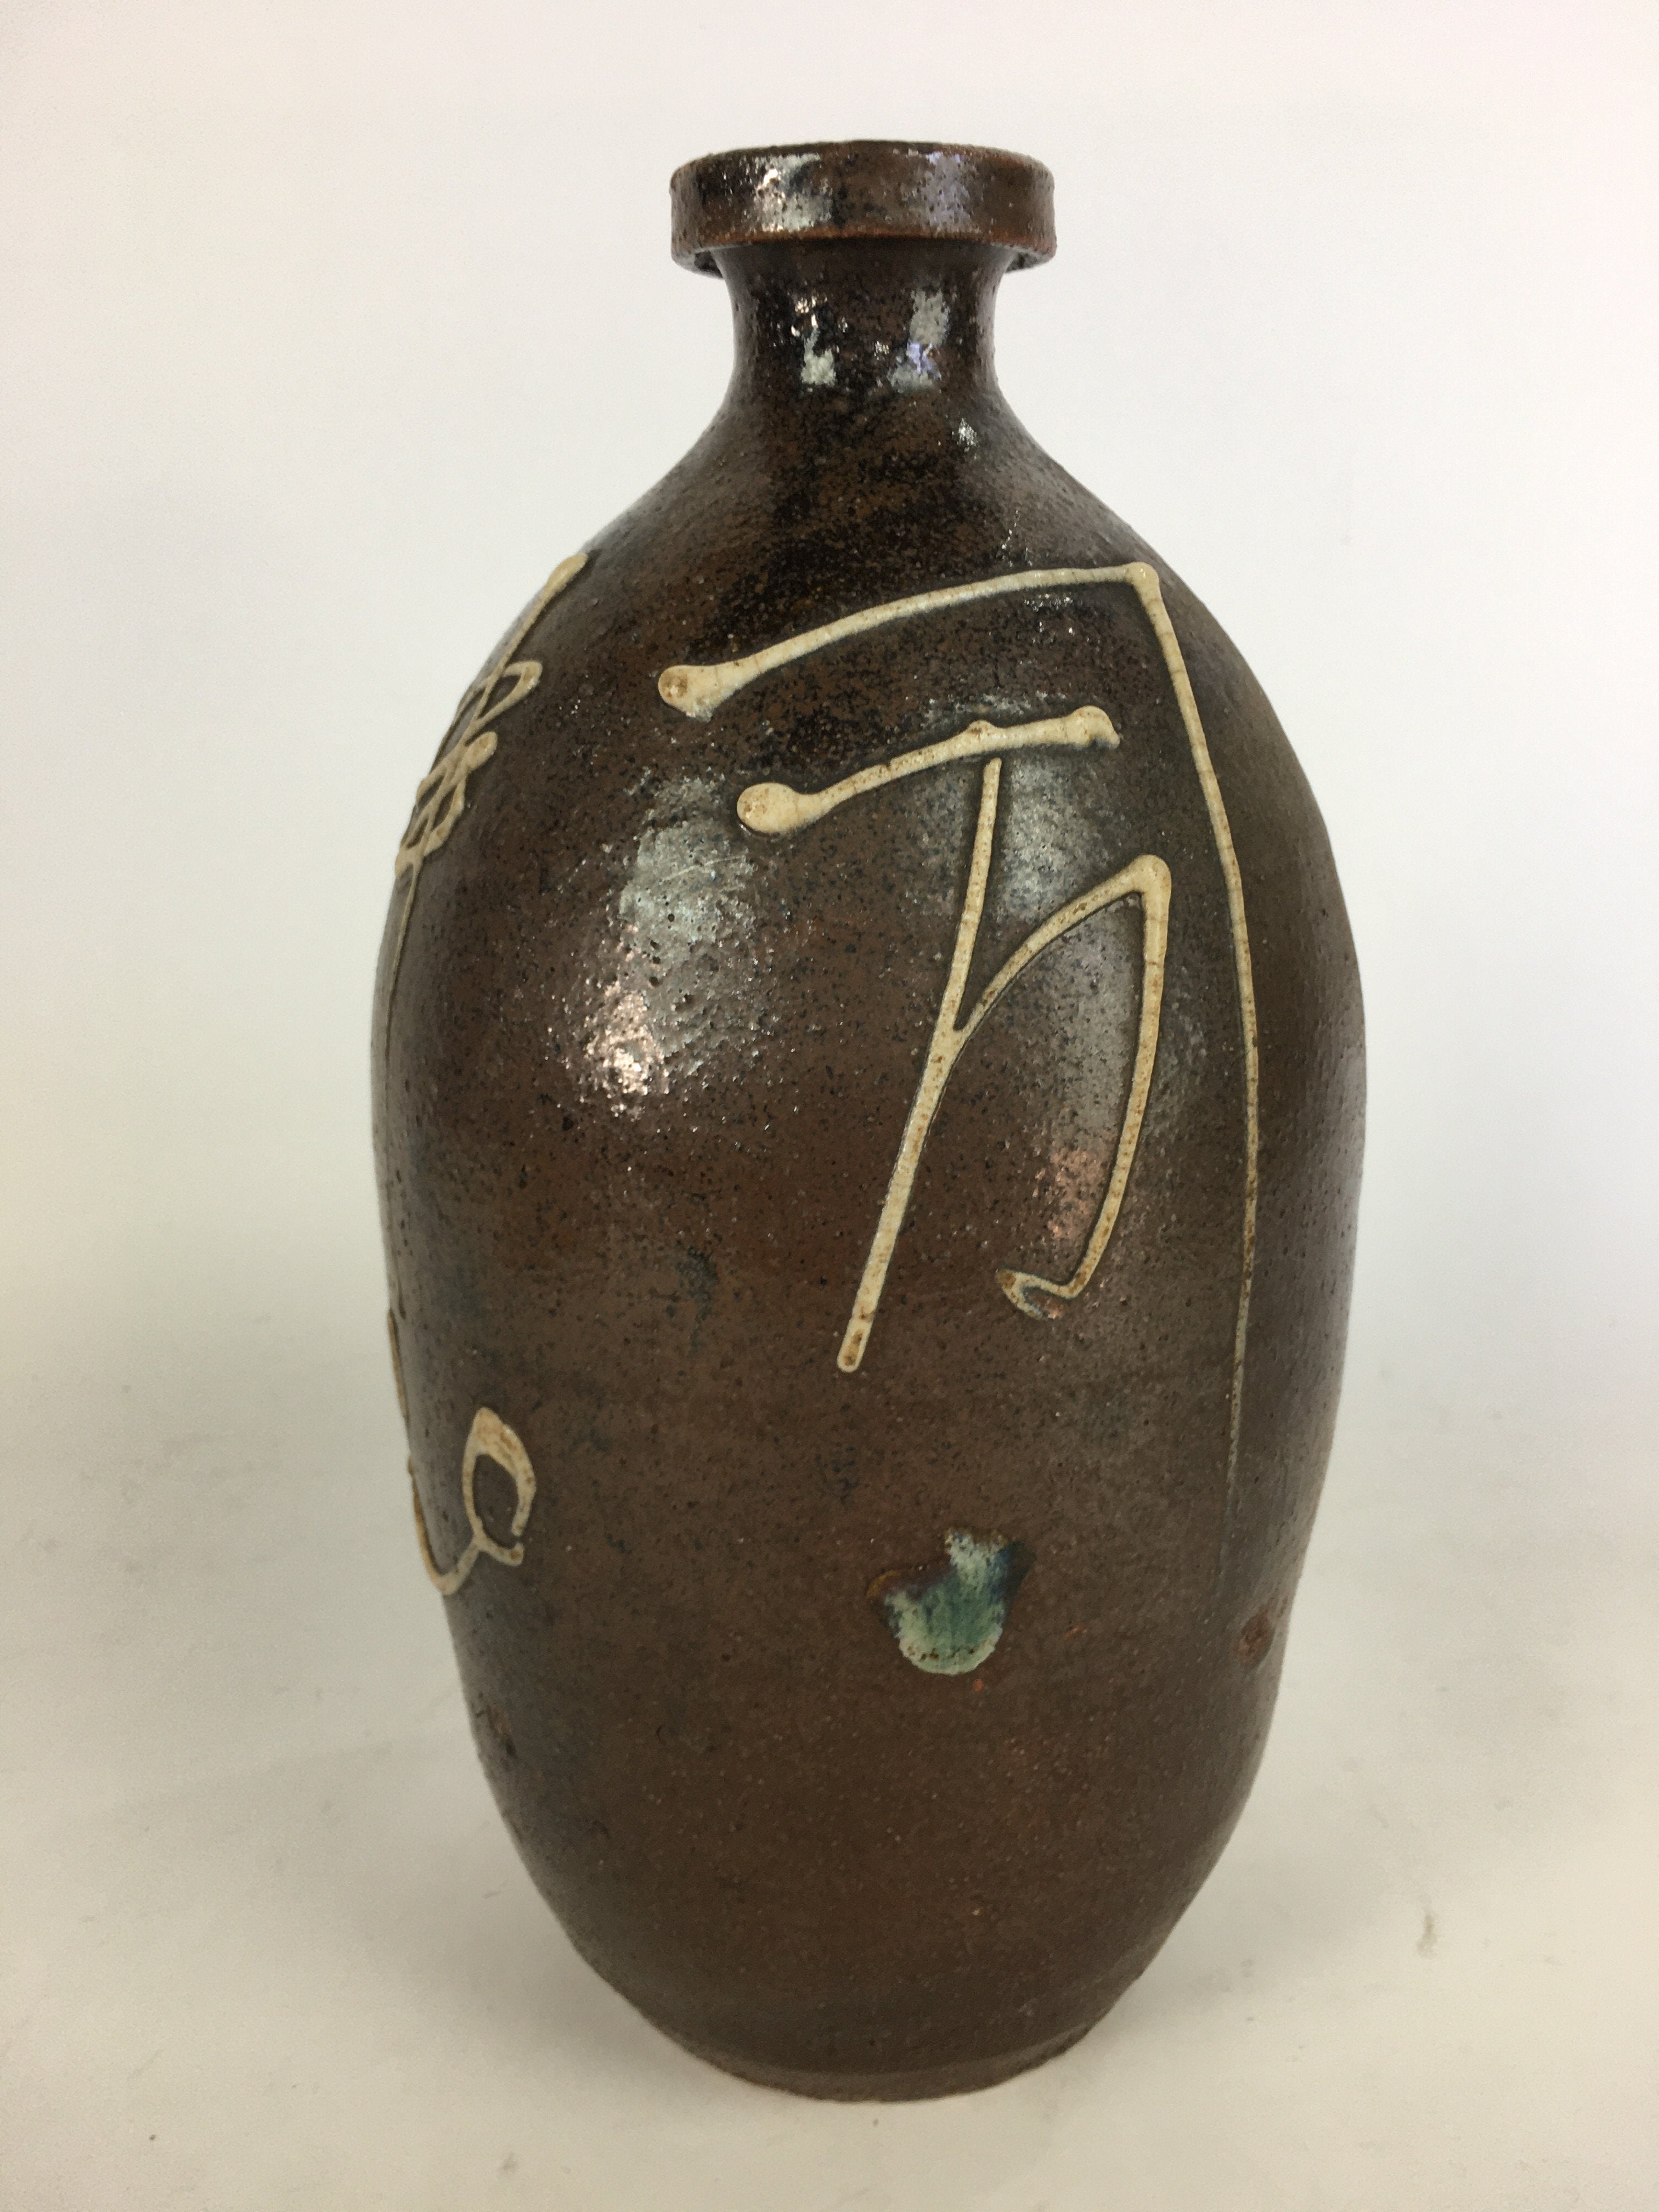 Antique Japanese Ceramic Sake Bottle Tokkuri Pottery Kayoi-Tokkuri Brown TS283